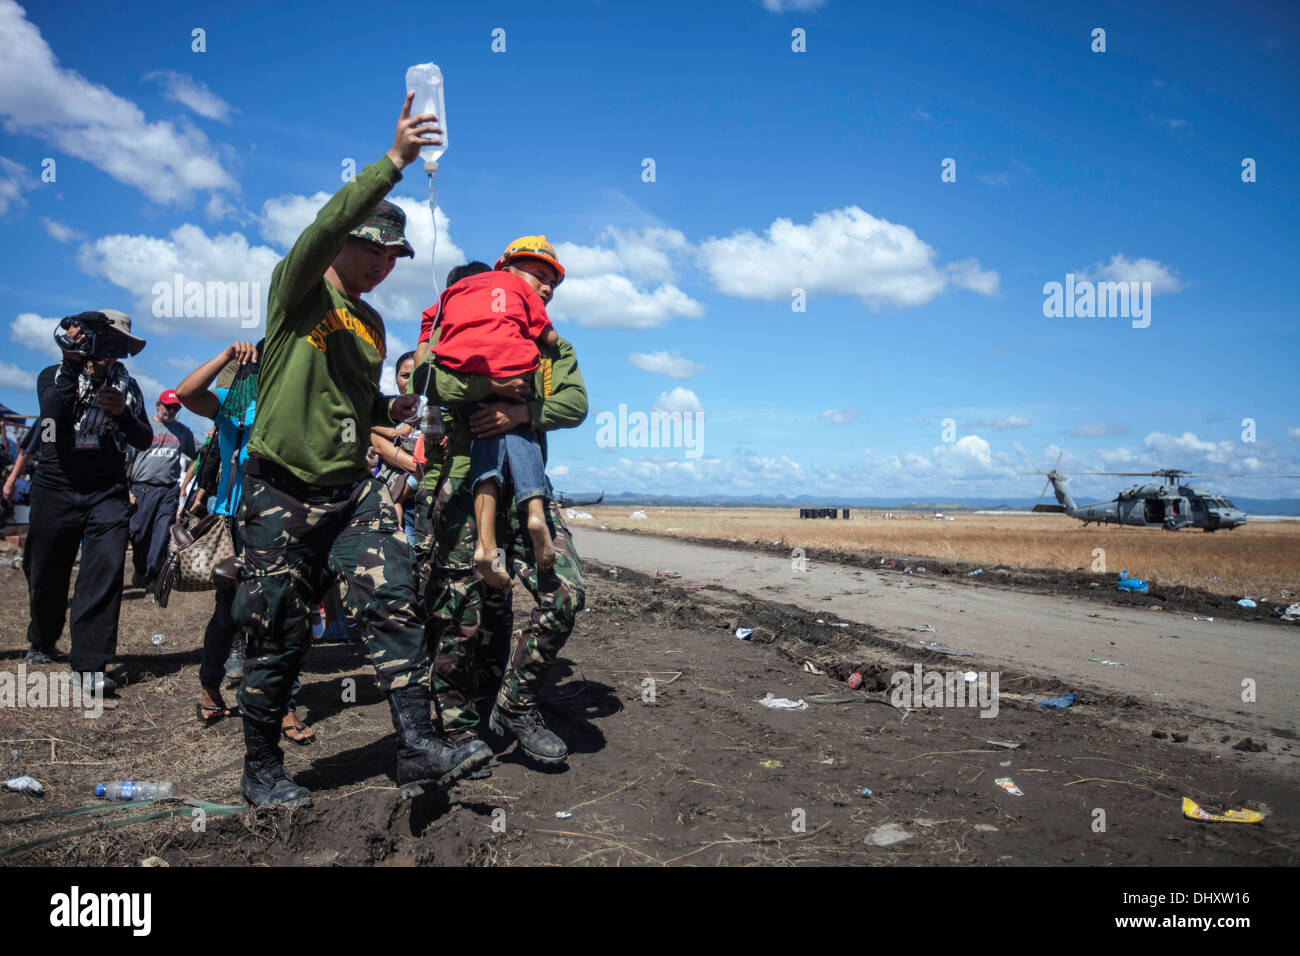 Ein Filipino junge mit einer Infusion wird durch Soldaten der philippinischen Armee unterstützt, da er in ein Luftfahrzeug für tr getragen wird Stockfoto